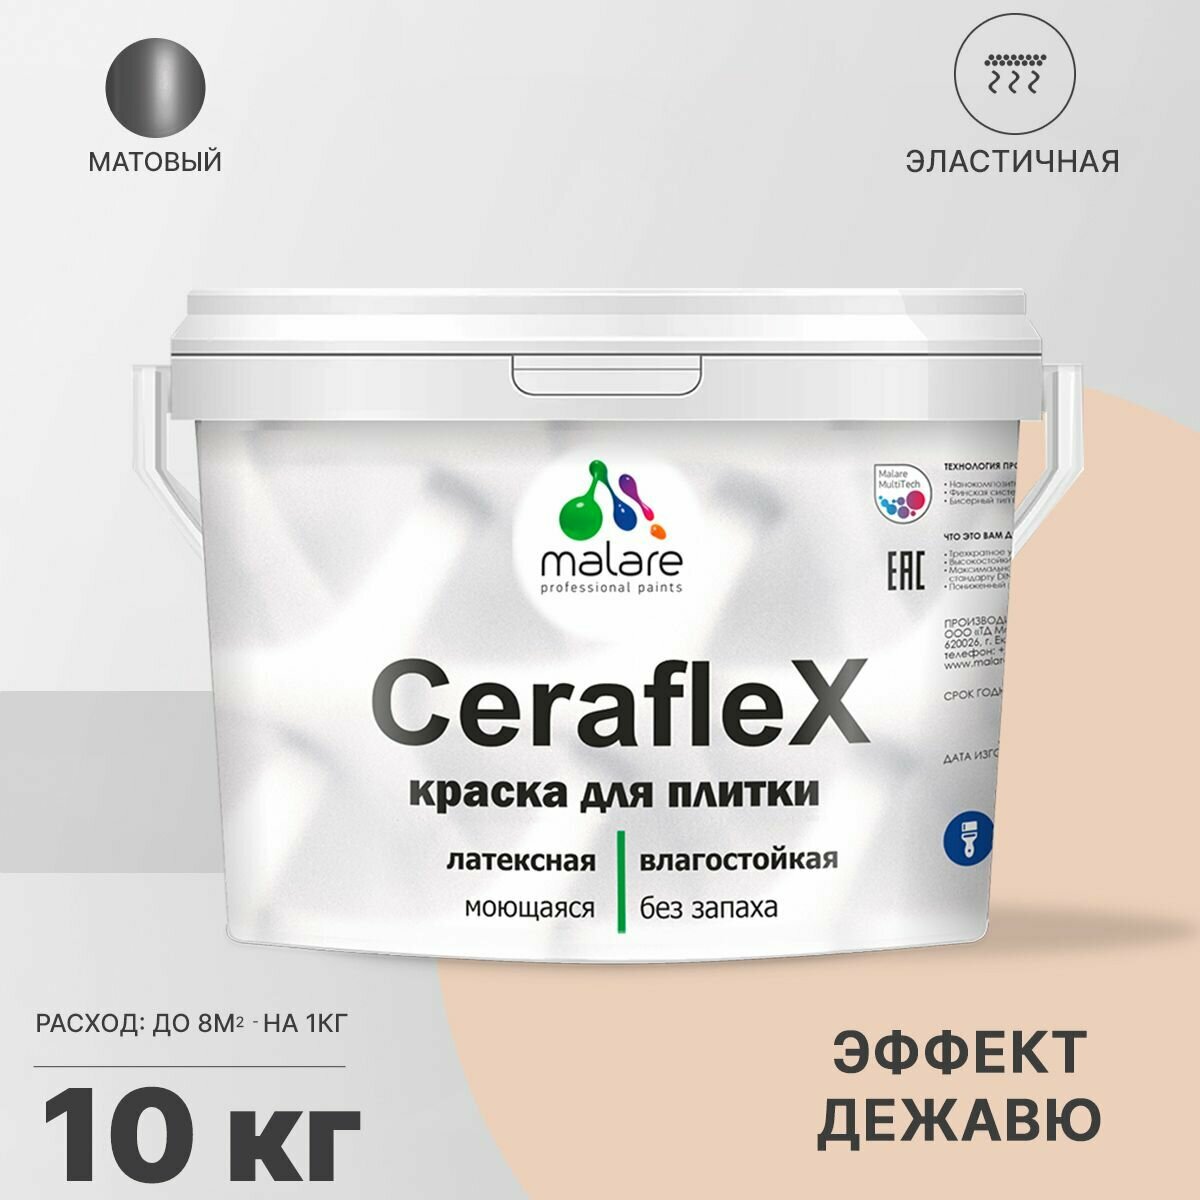 Краска резиновая Malare Ceraflex для керамической плитки, эластичная, моющаяся, быстросохнущая, без запаха, матовая, эффект дежавю, 10 кг.